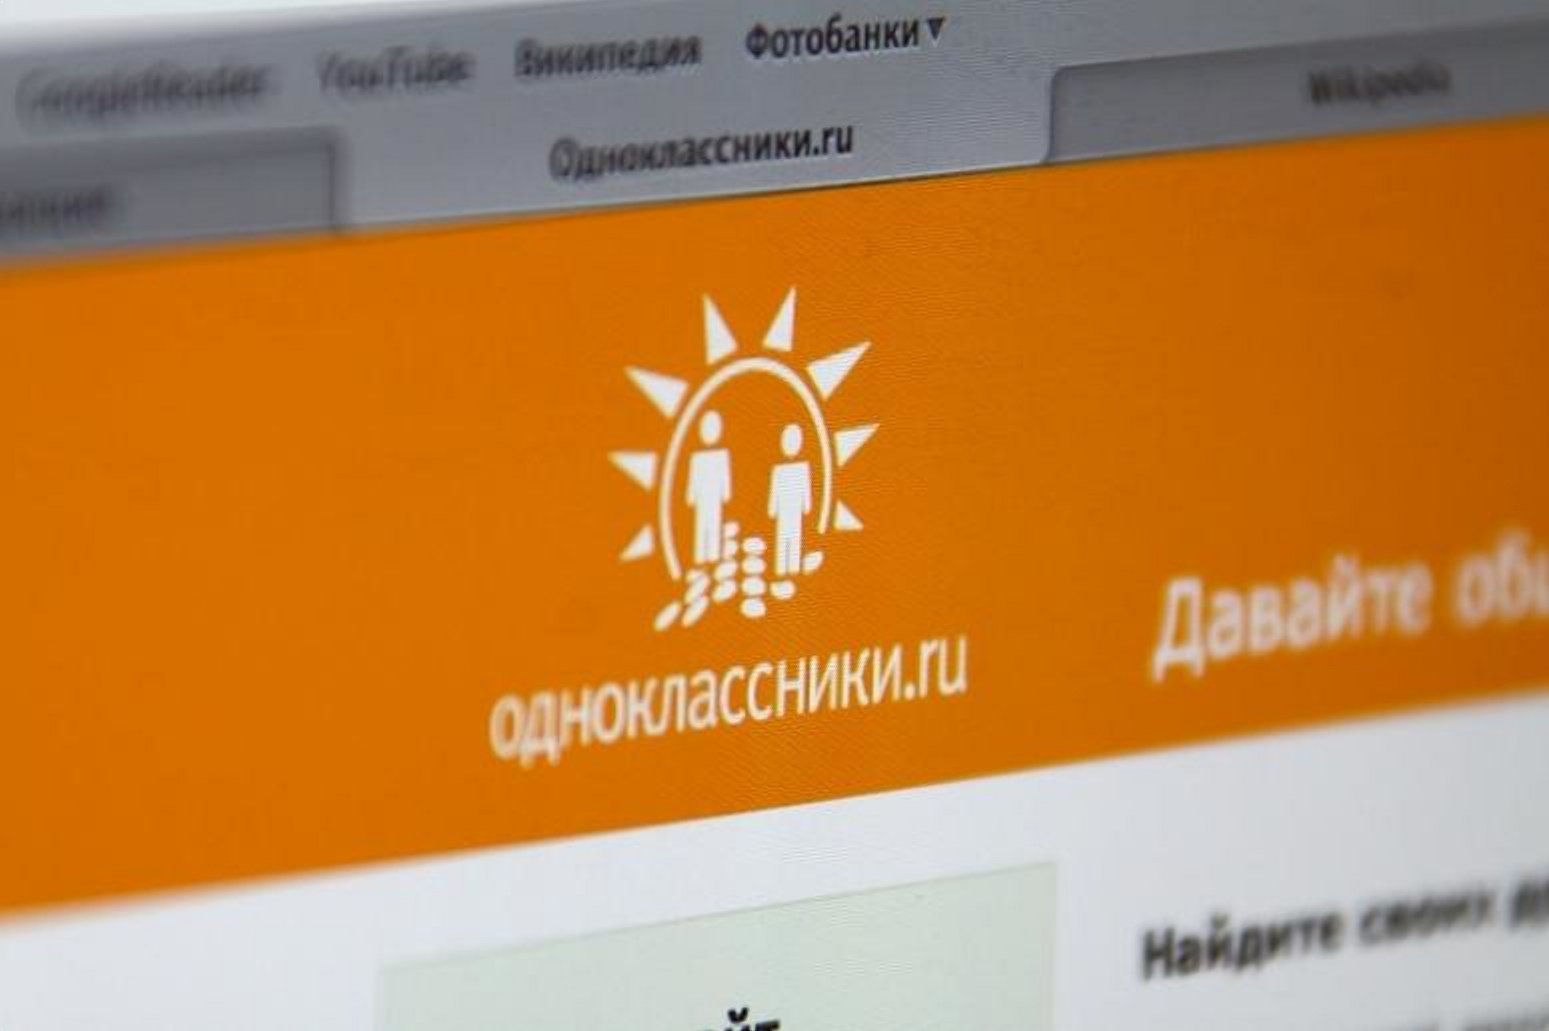 Сколько социальная сеть "Одноклассники" выплатила разработчикам игр в 2018 году  